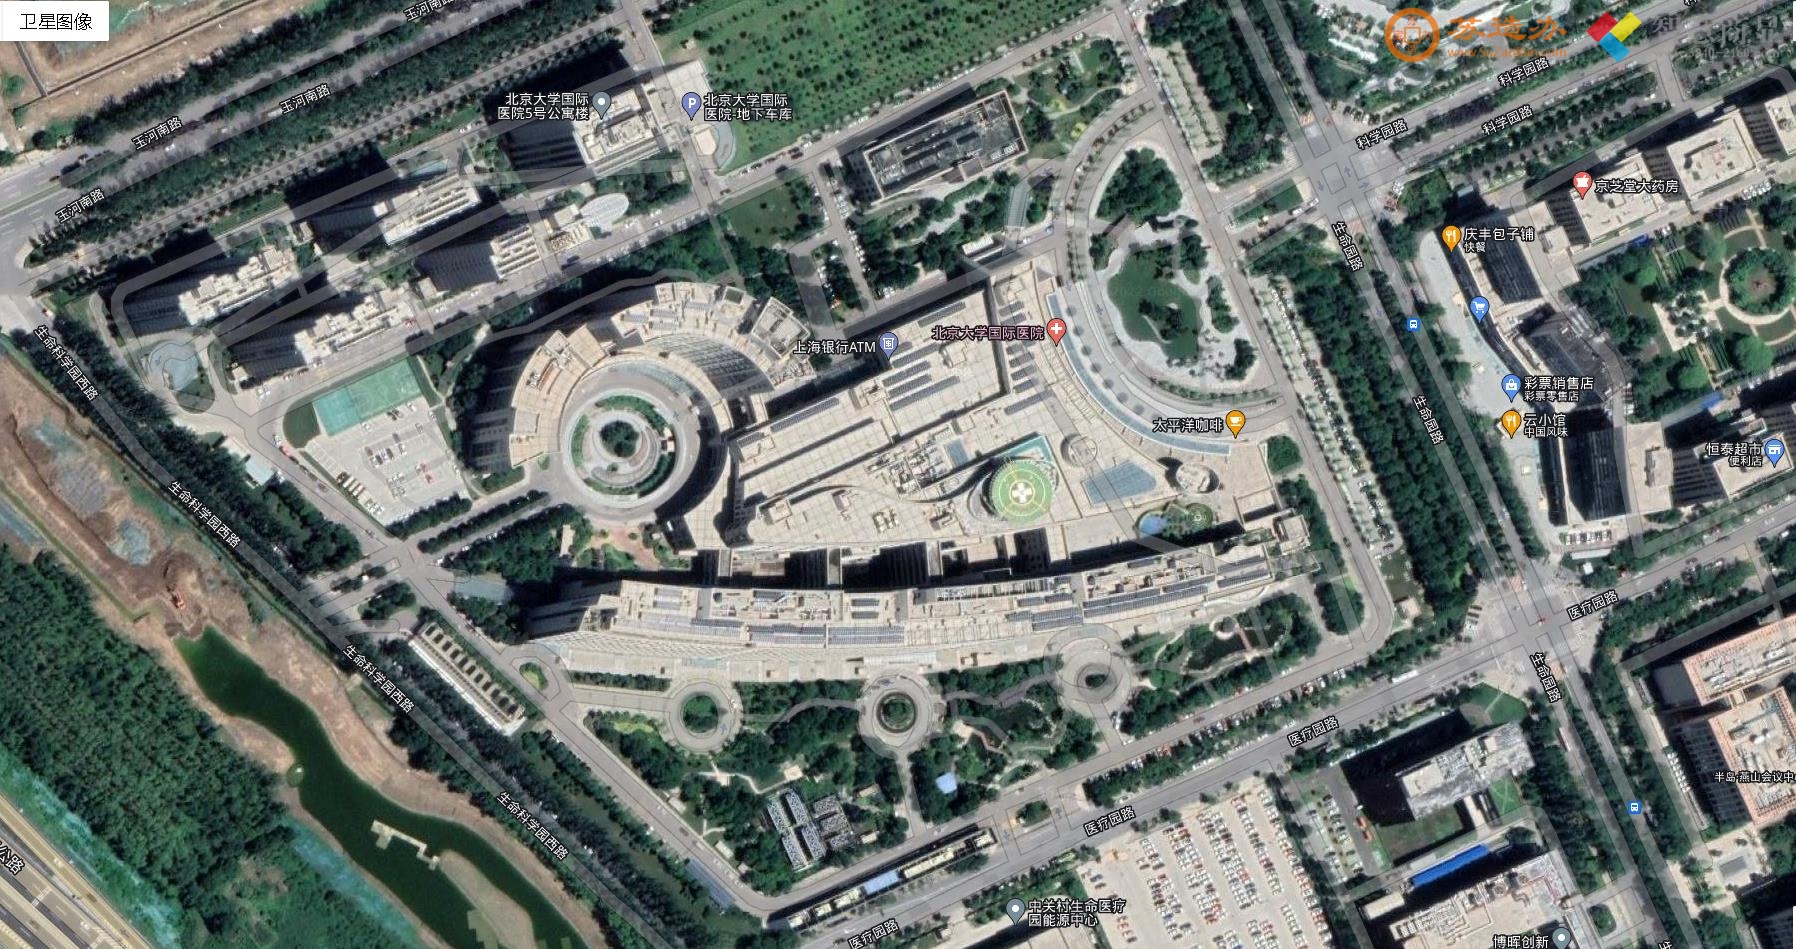 北京大学医学院-楼顶直升机停机坪